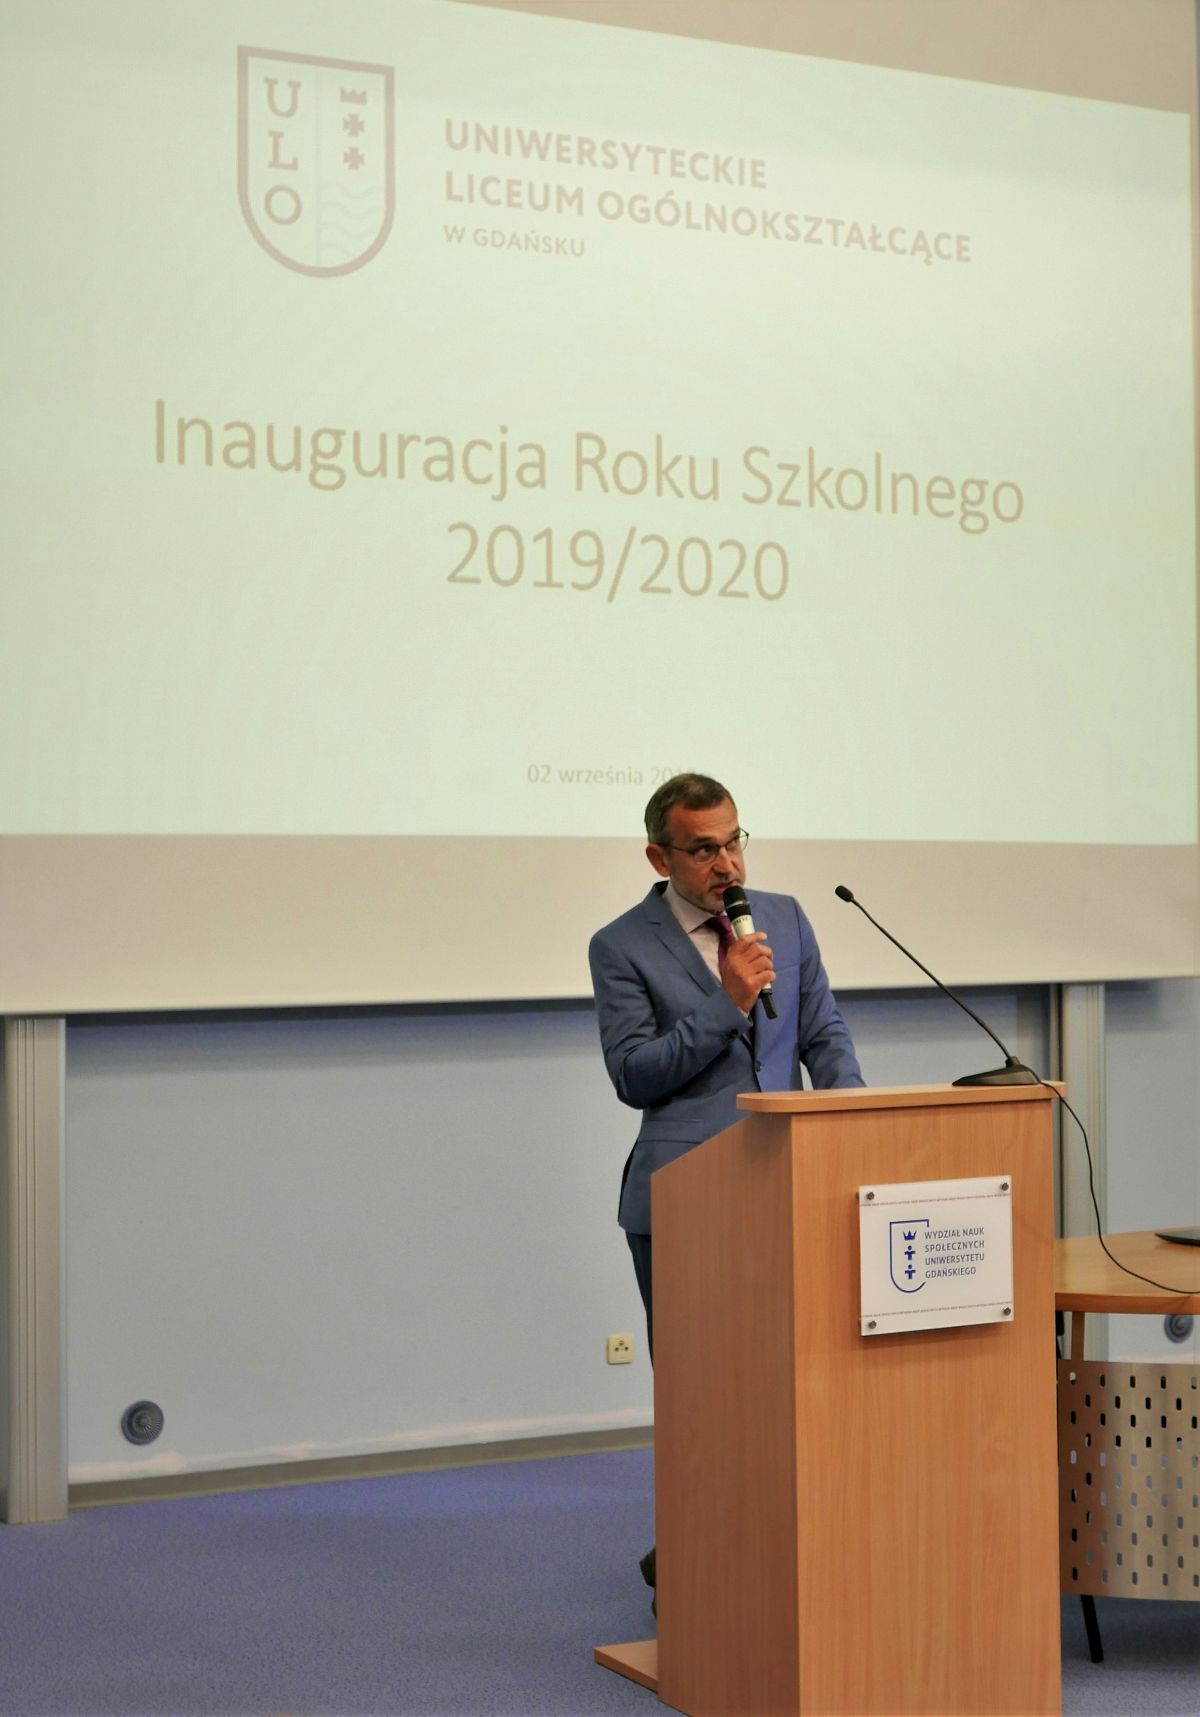 ULO, inauguracja roku szkolnego, Dyrektor ULO Waldemar Kotowski, fot. Sekcja Promocji UG